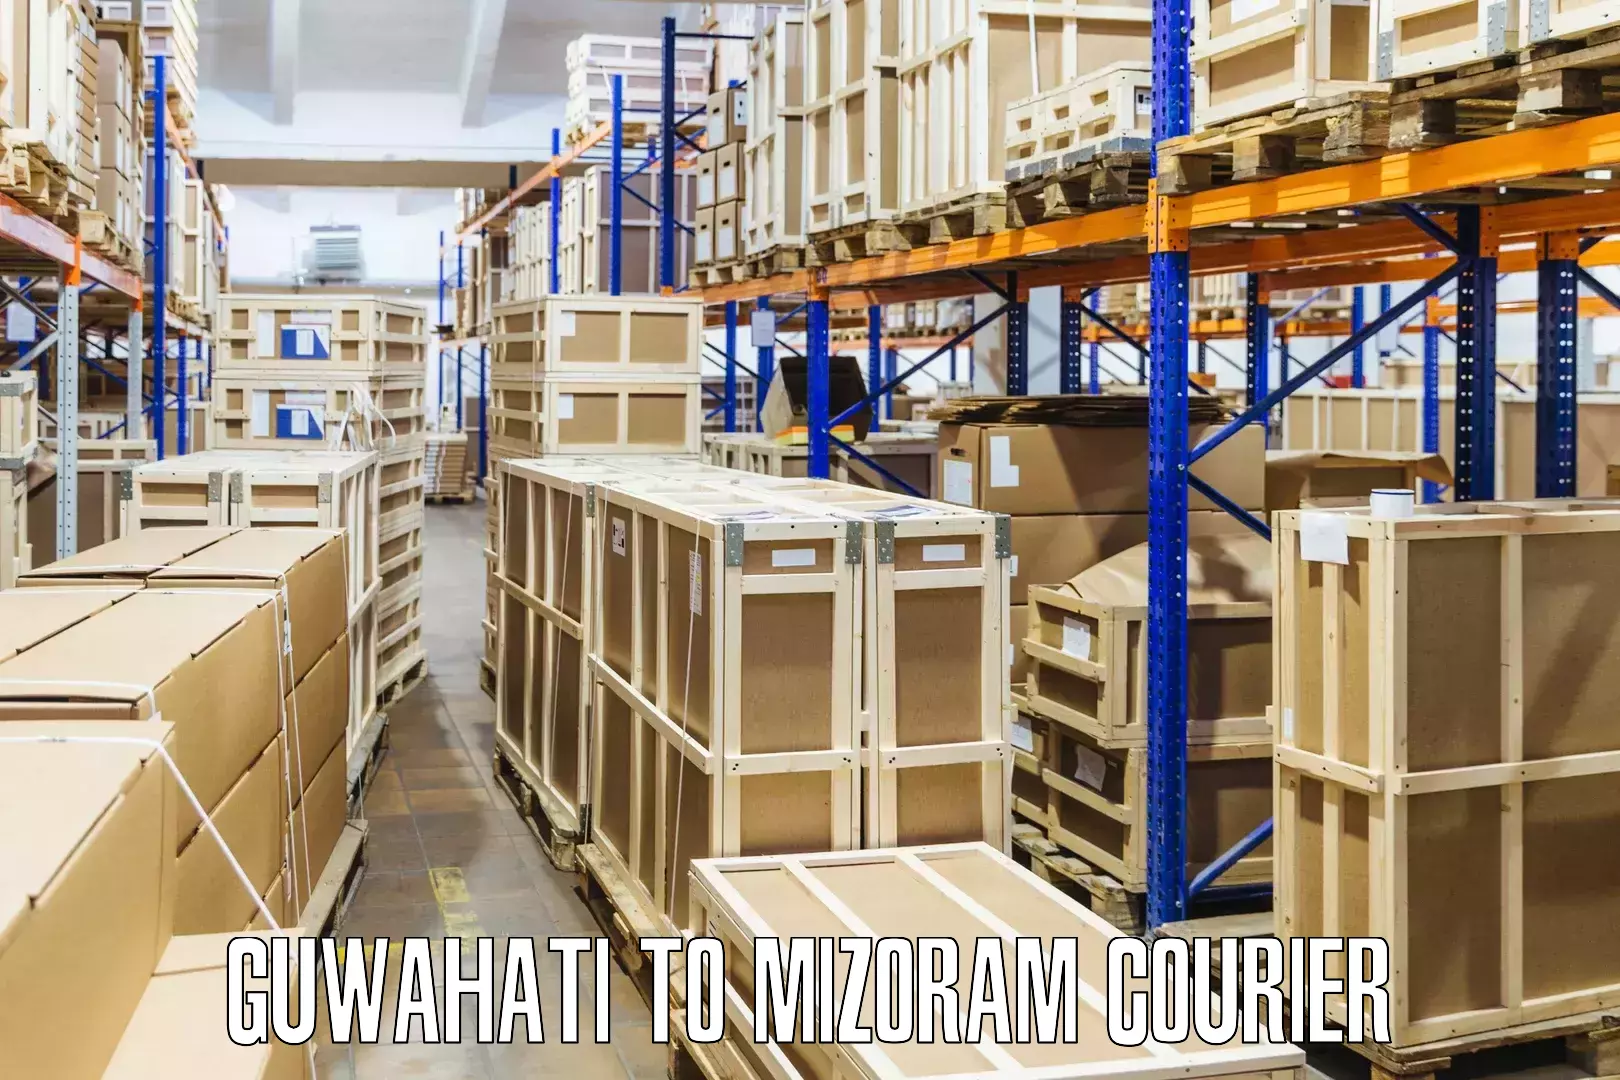 Nationwide courier service Guwahati to Khawzawl